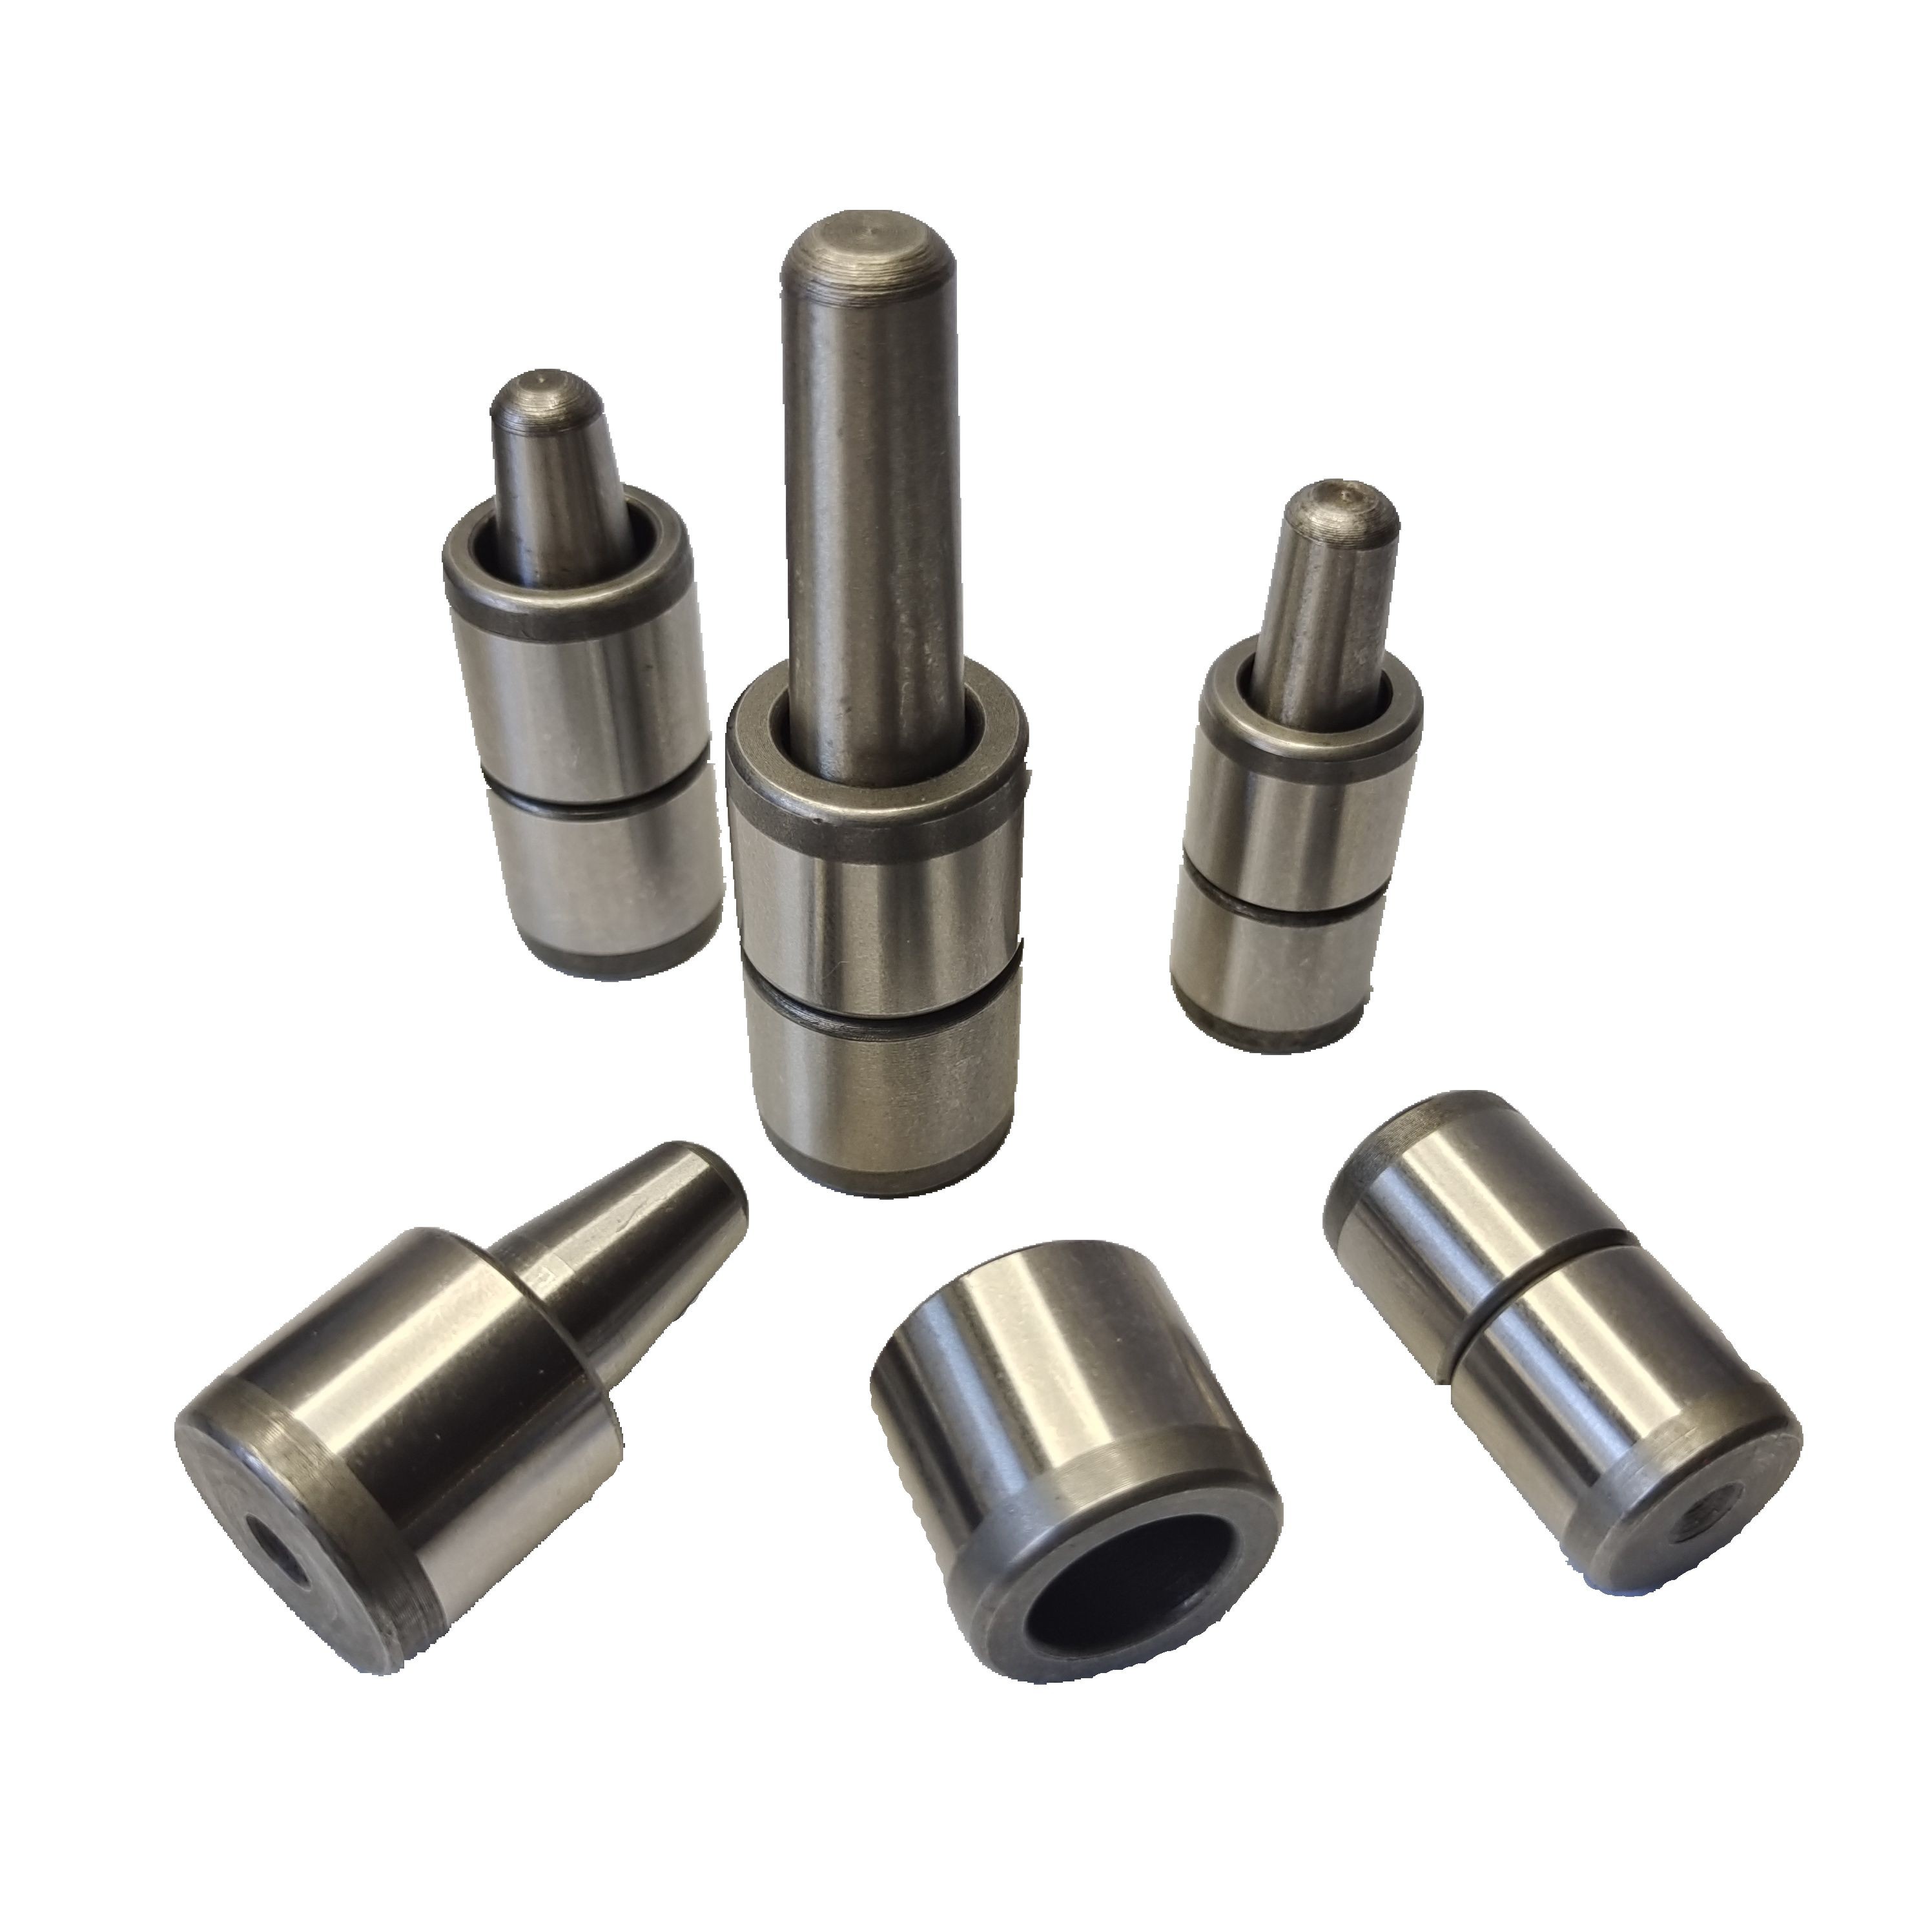 10-20橡胶硅胶模具导柱导套精准定位模具配件导柱导套精密级耐用